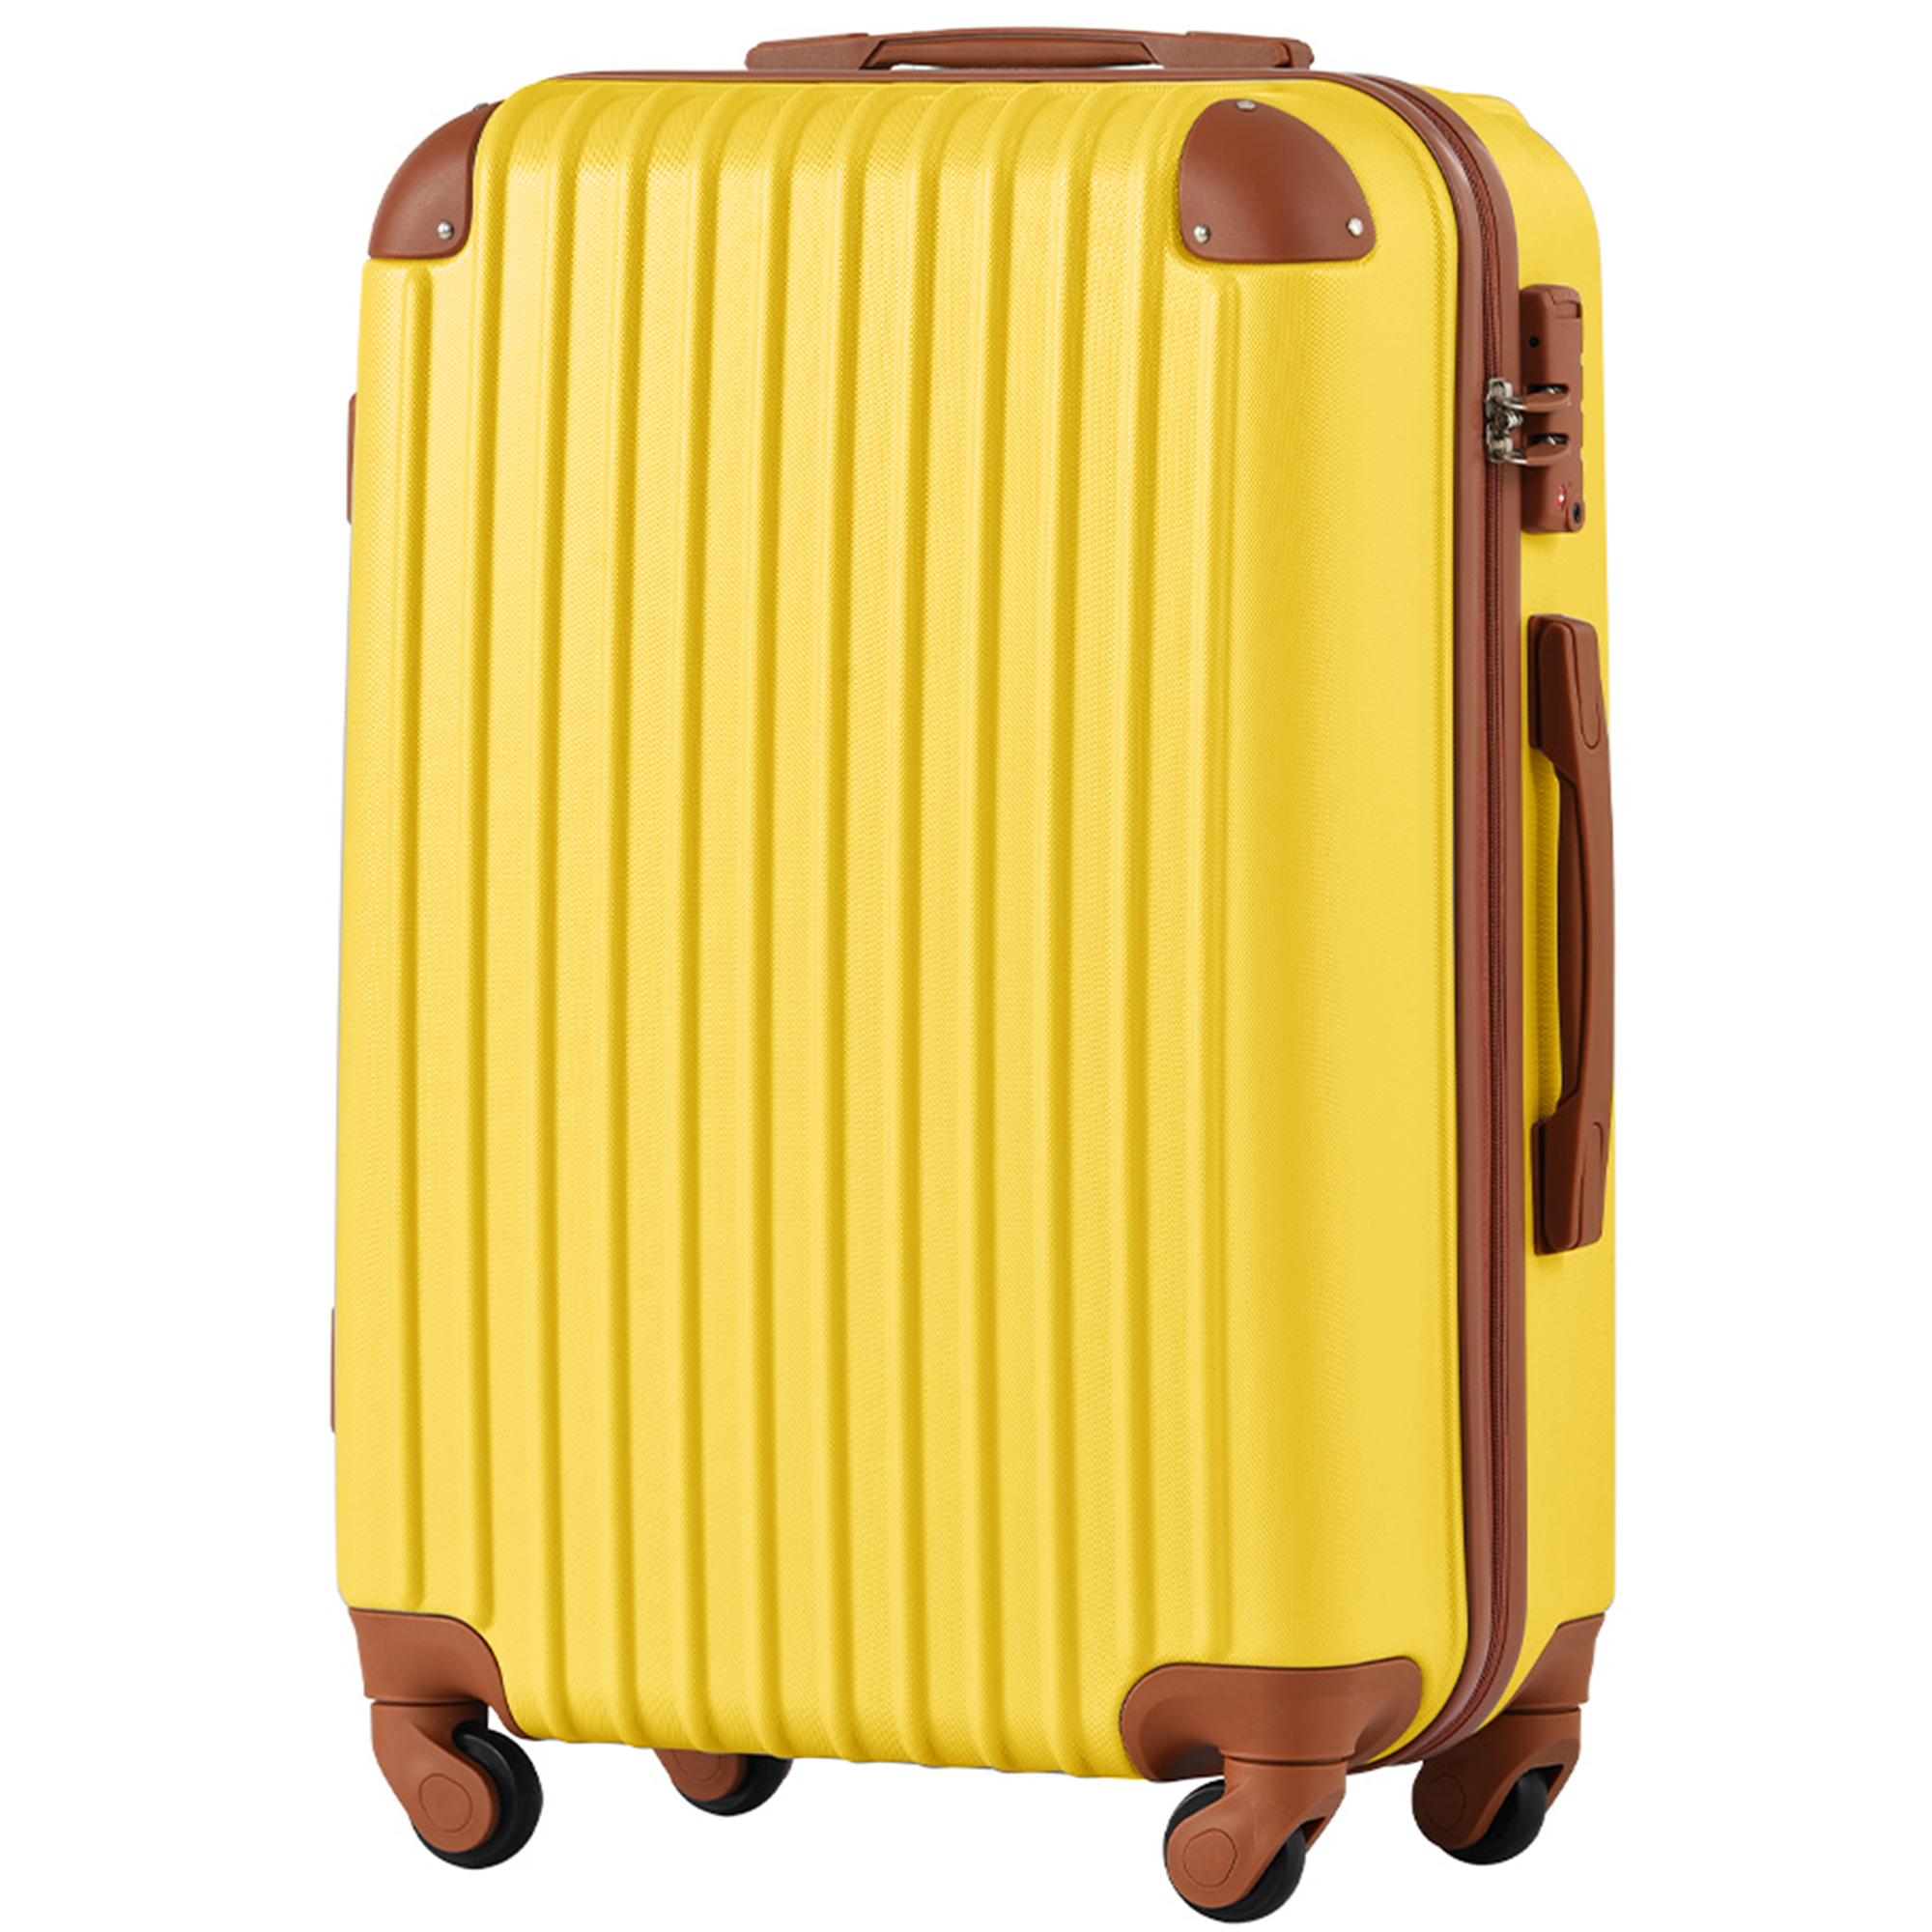 スーツケース Lサイズ 超大容量 大型 7-10日用 キャリーケース 軽量